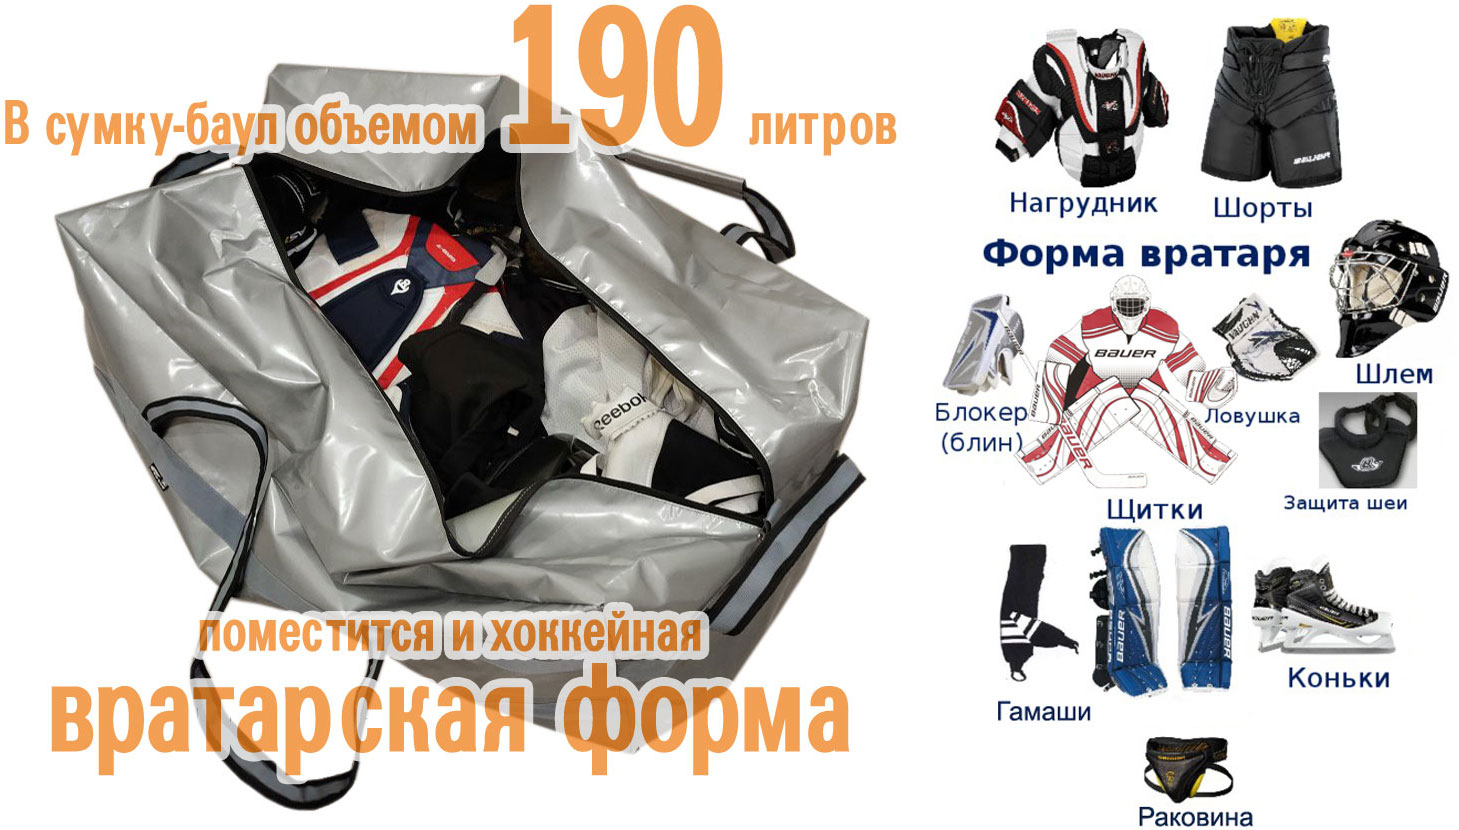 Спортивная сумка-баул Course 190 литров - для хоккейной вратарской амуниции